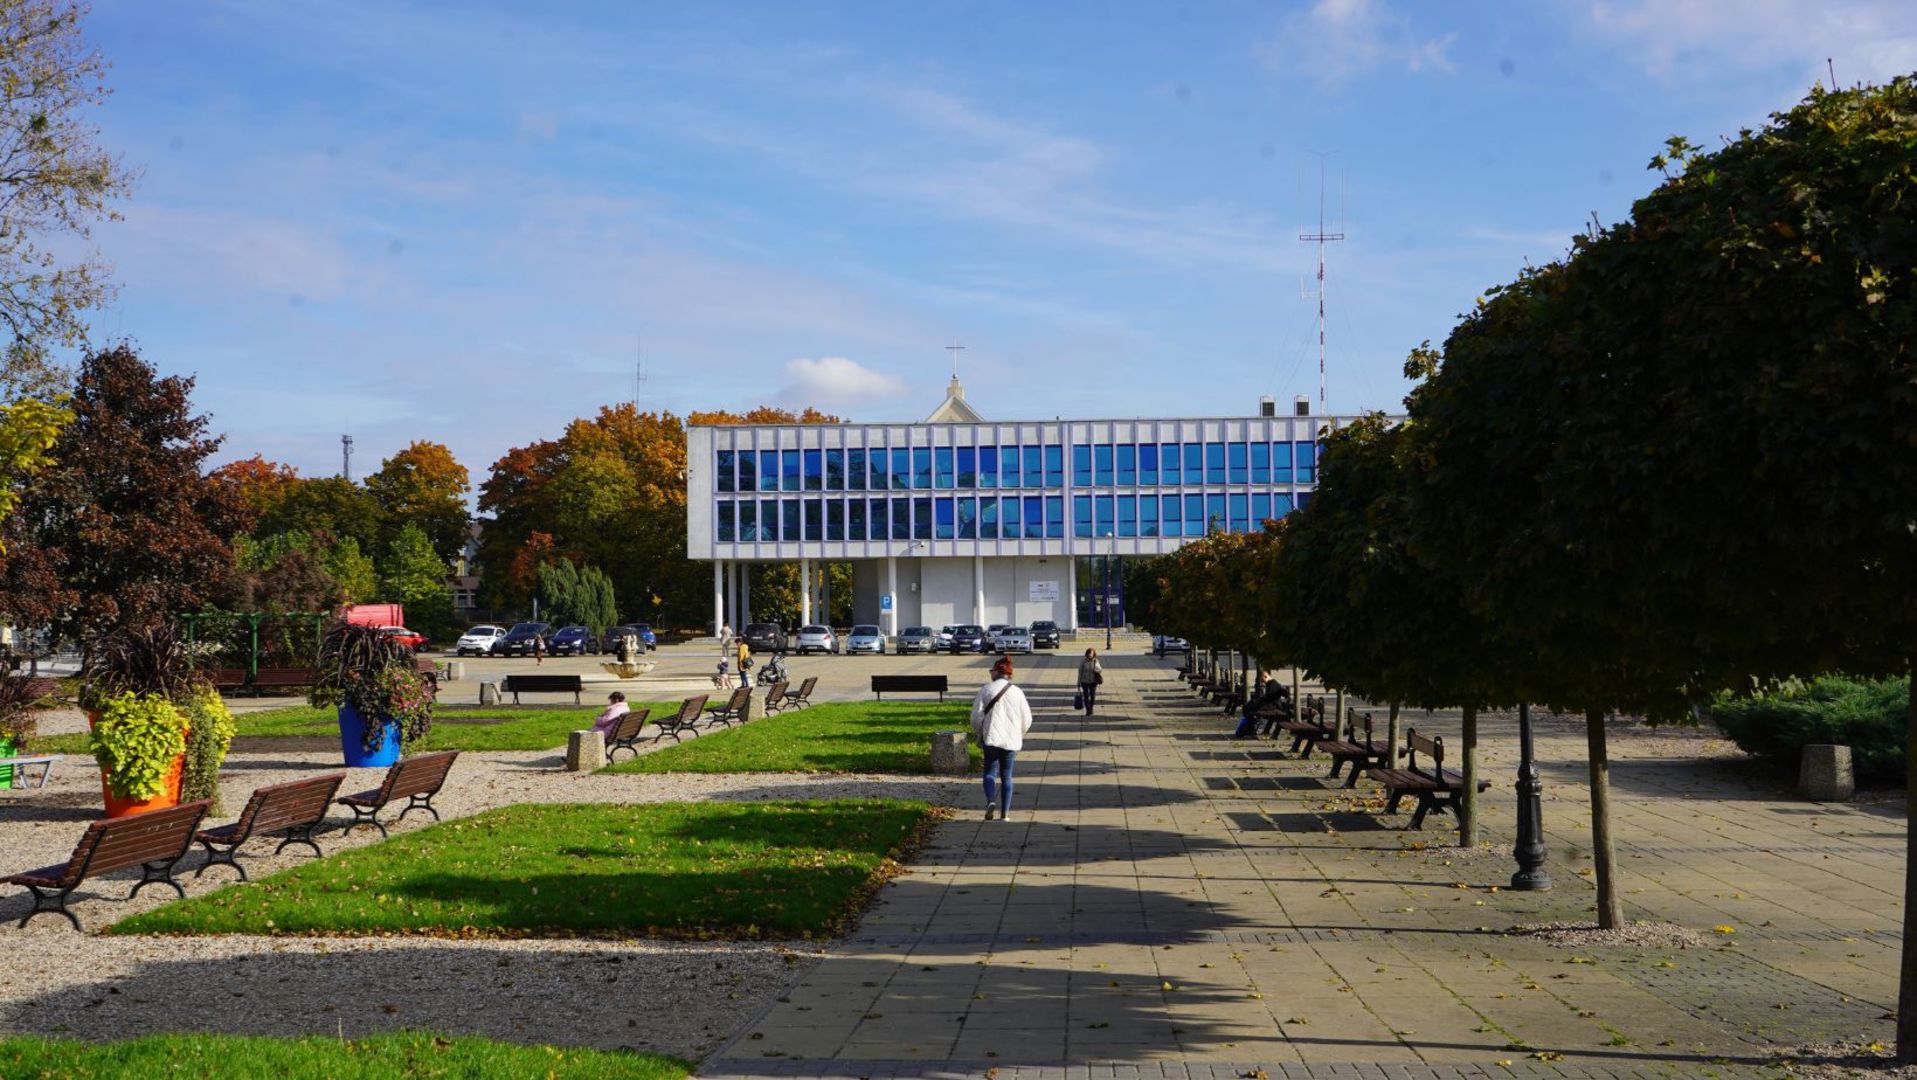 Widok na budynek Urzędu Miasta oraz Plac Chopina